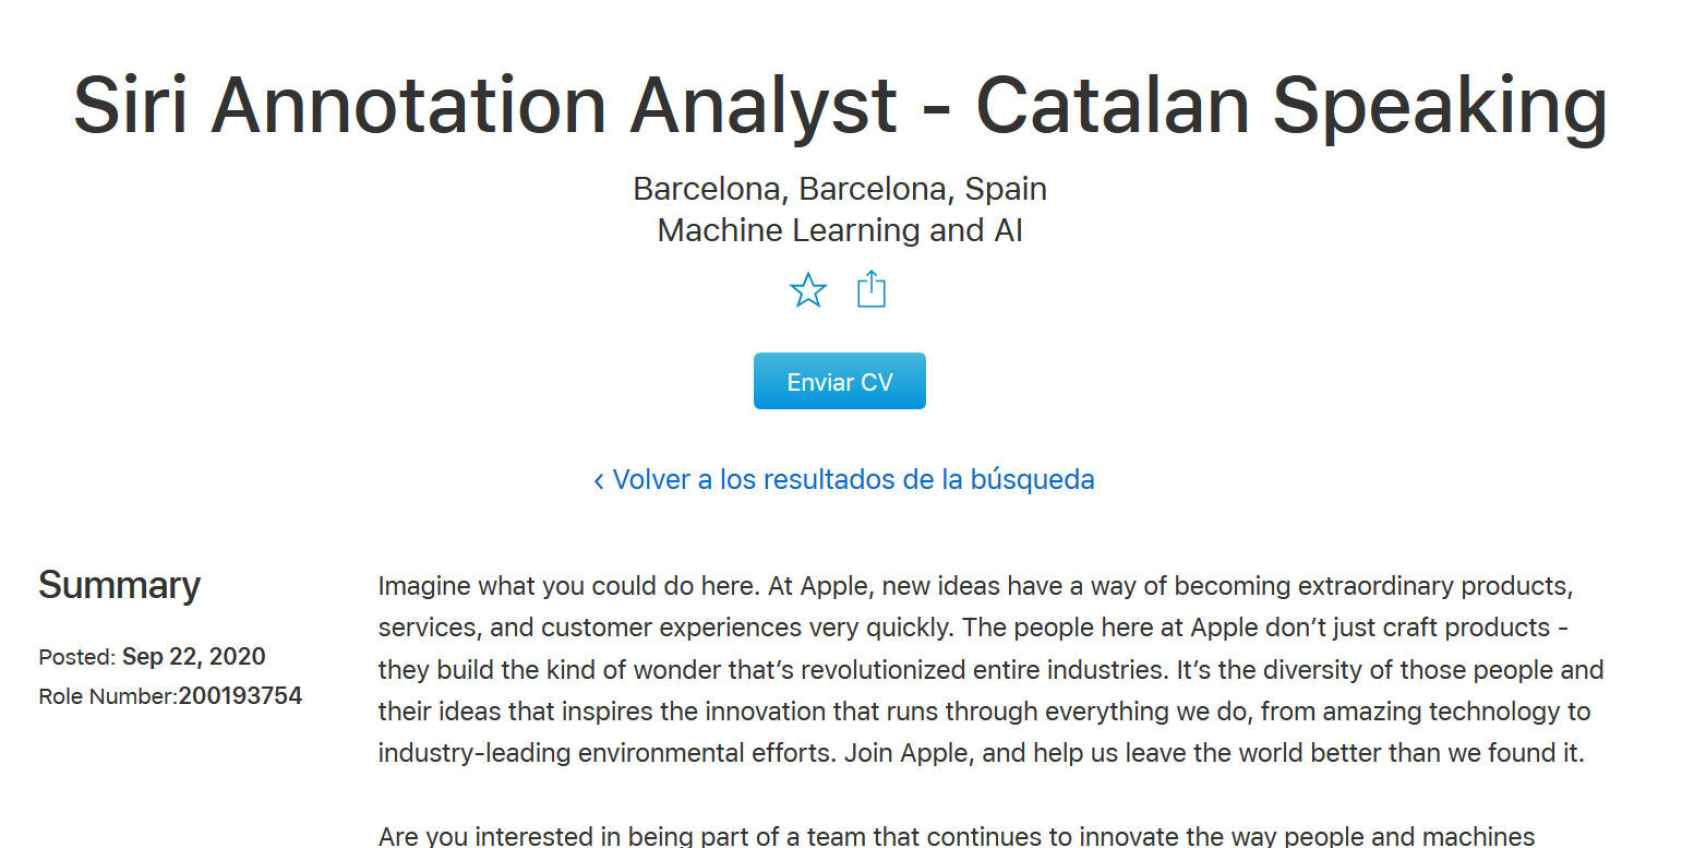 Oferta de trabajo de Apple buscando empleados que hablen catalán